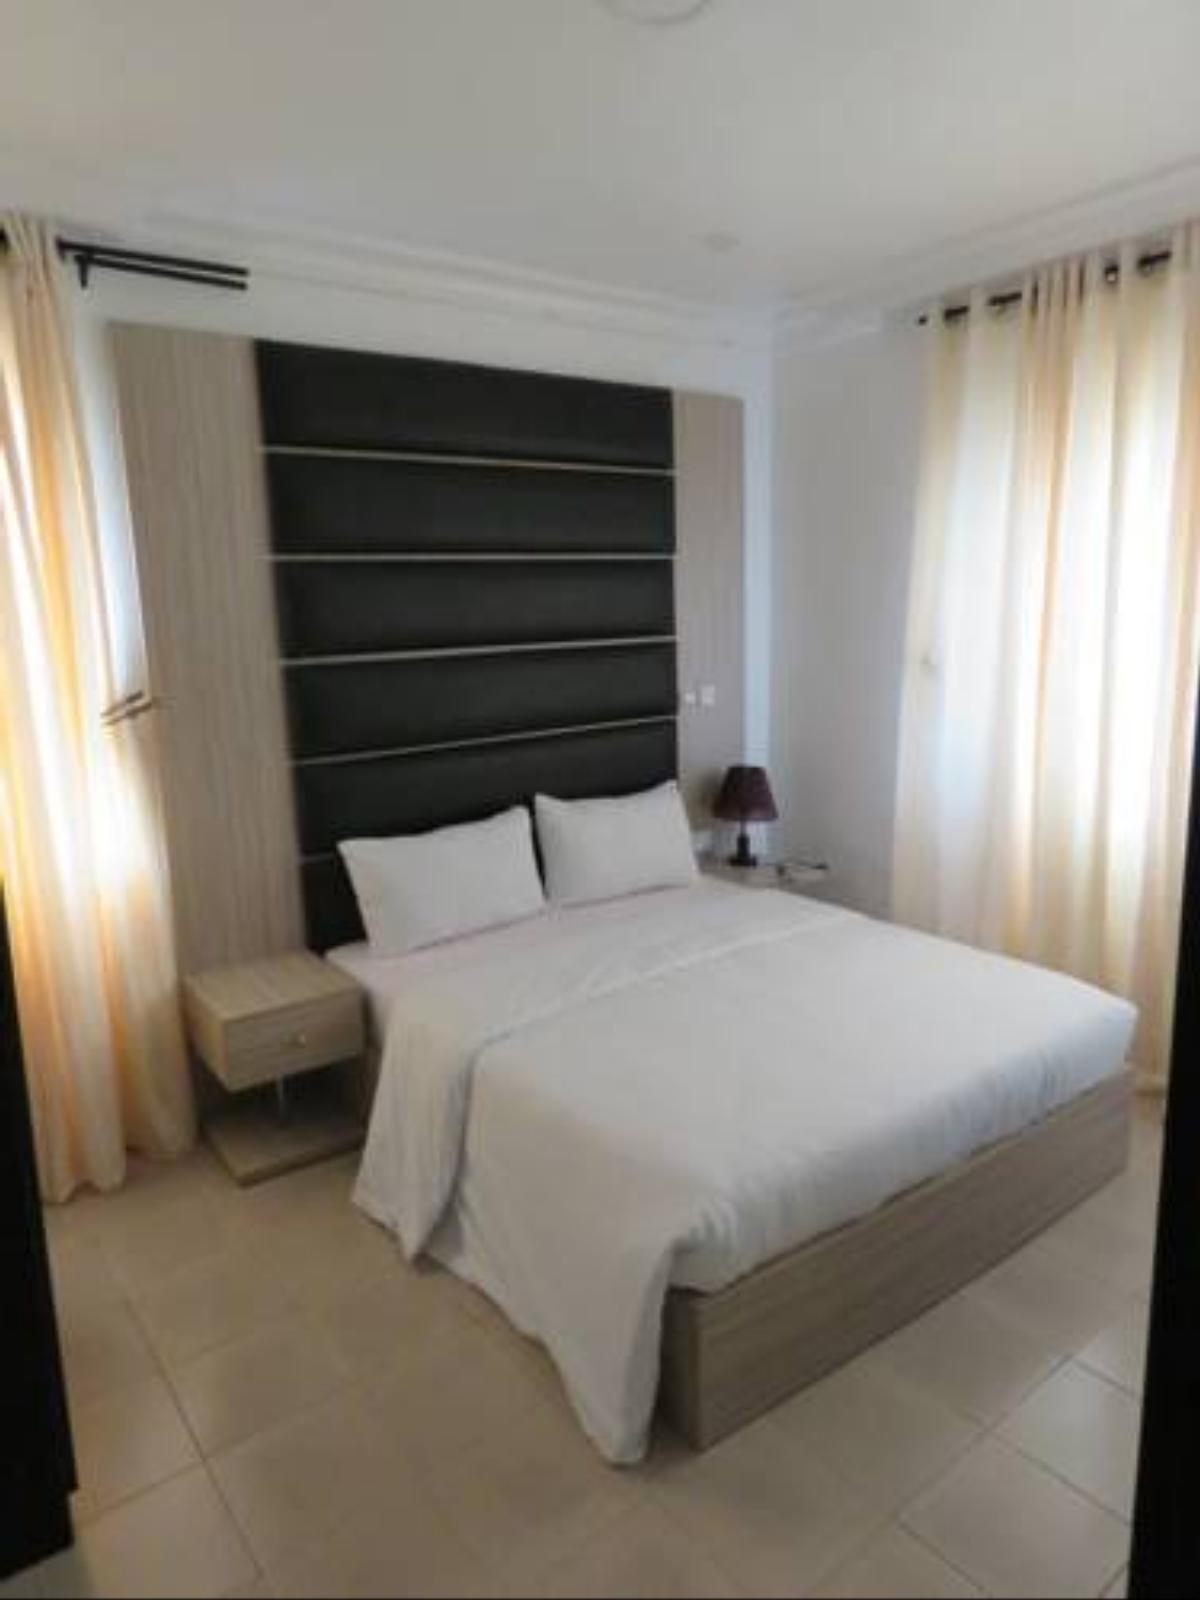 PeW Apartments Hotel Lagos Nigeria